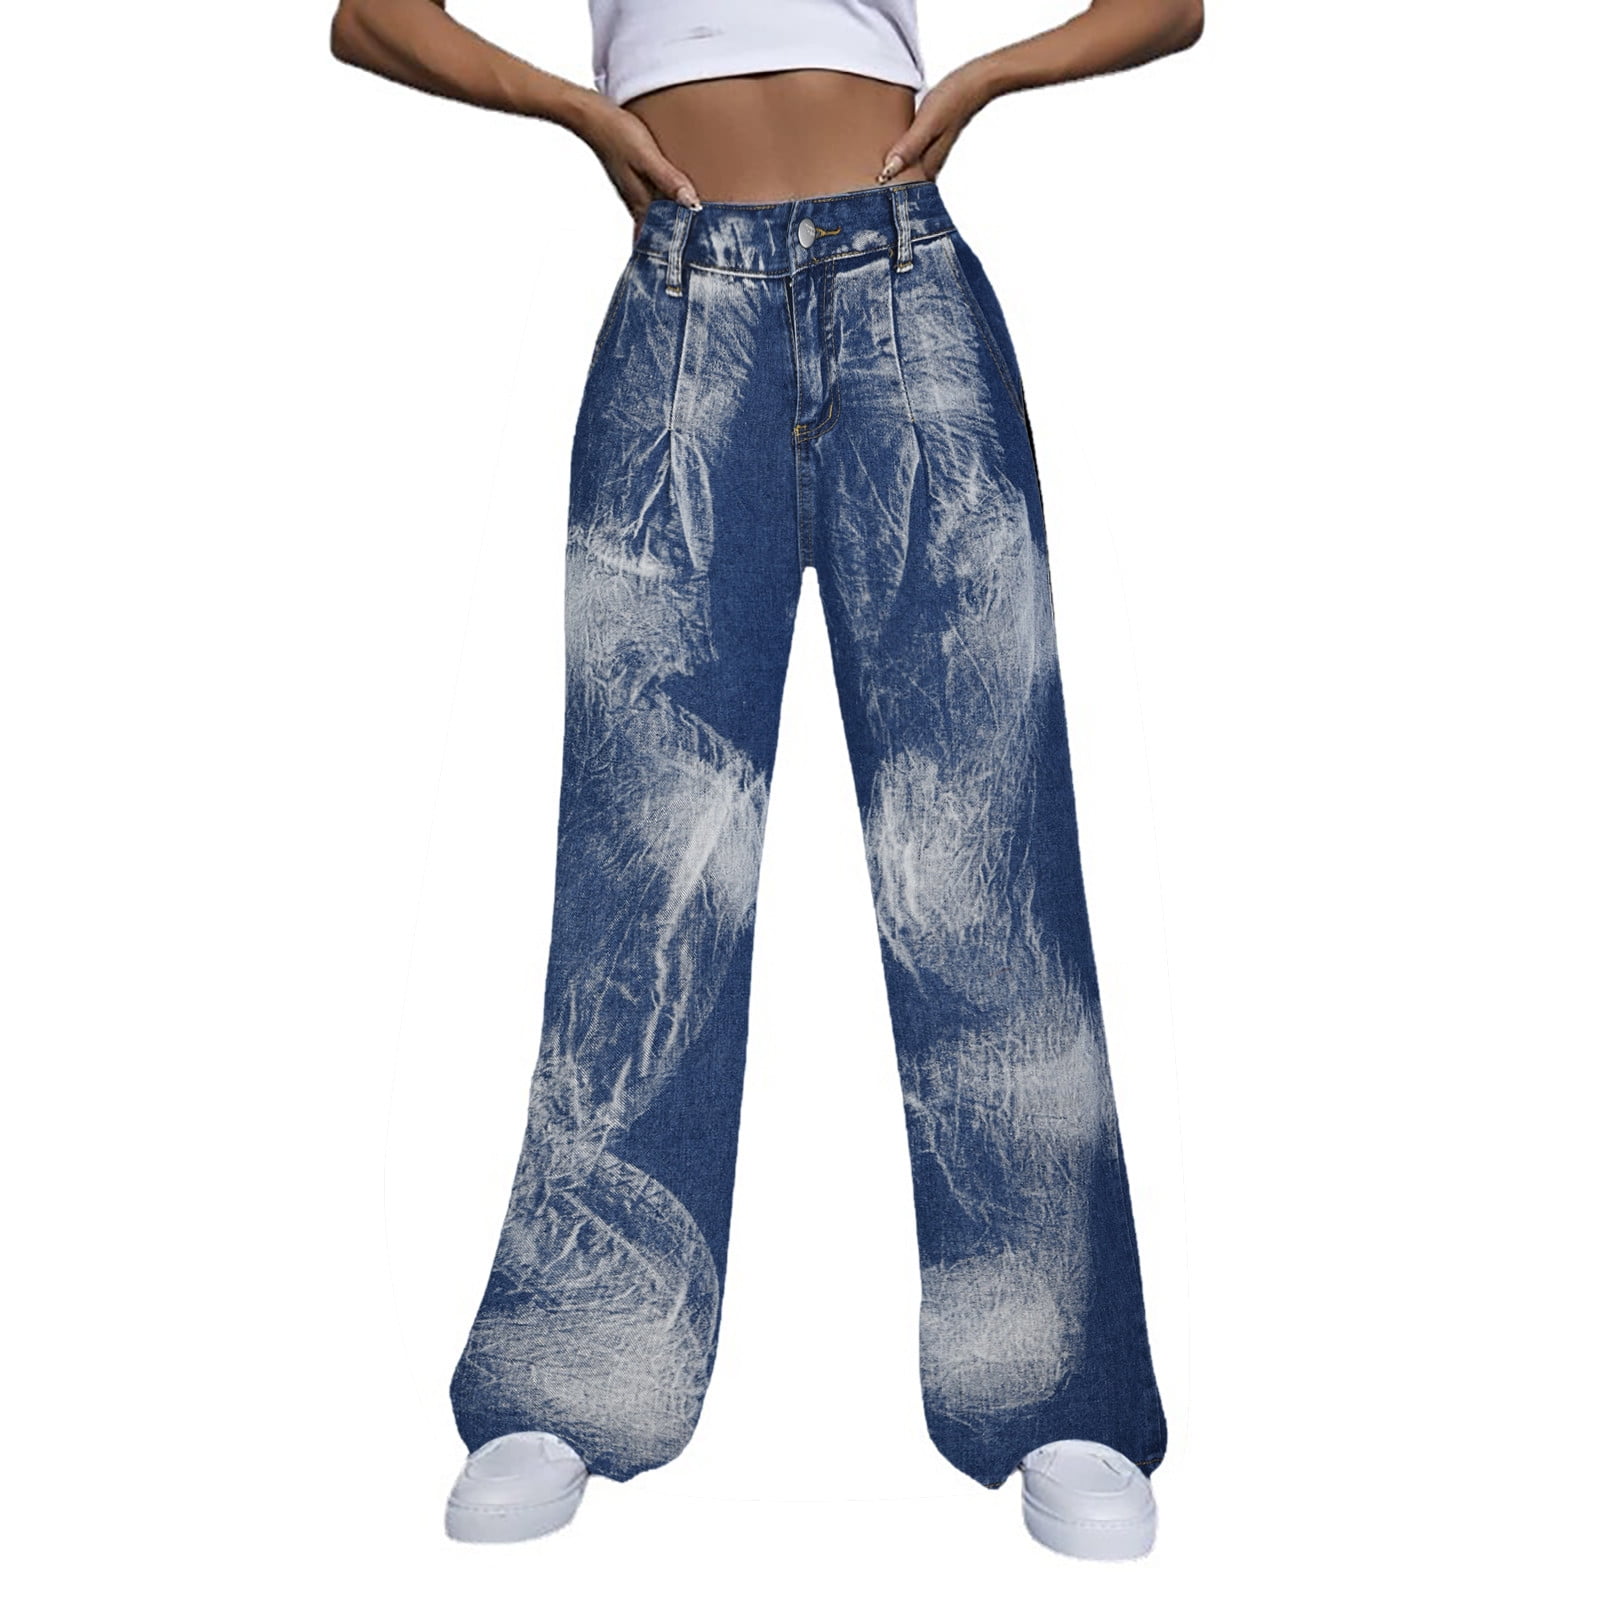 KJIUQ Wide Leg Ripped Jeans for Women High Waist Baggy Distressed Denim  Pants Casual Y2K Trendy Streetwear Trousers(Blue,L)